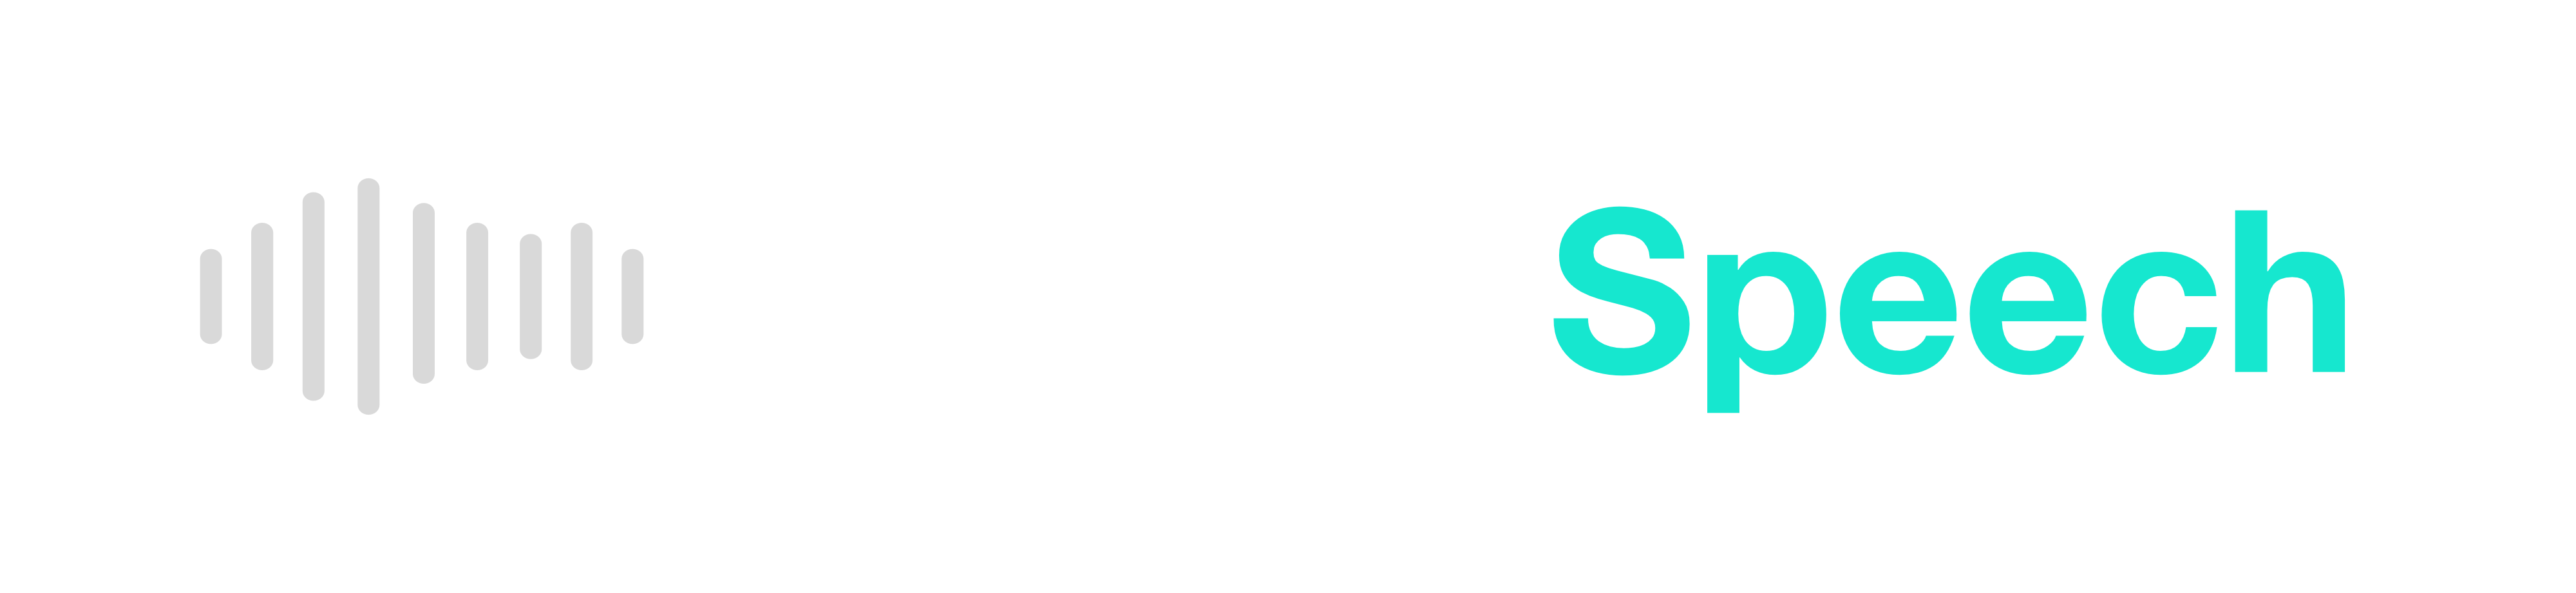 Text to Speech Logo